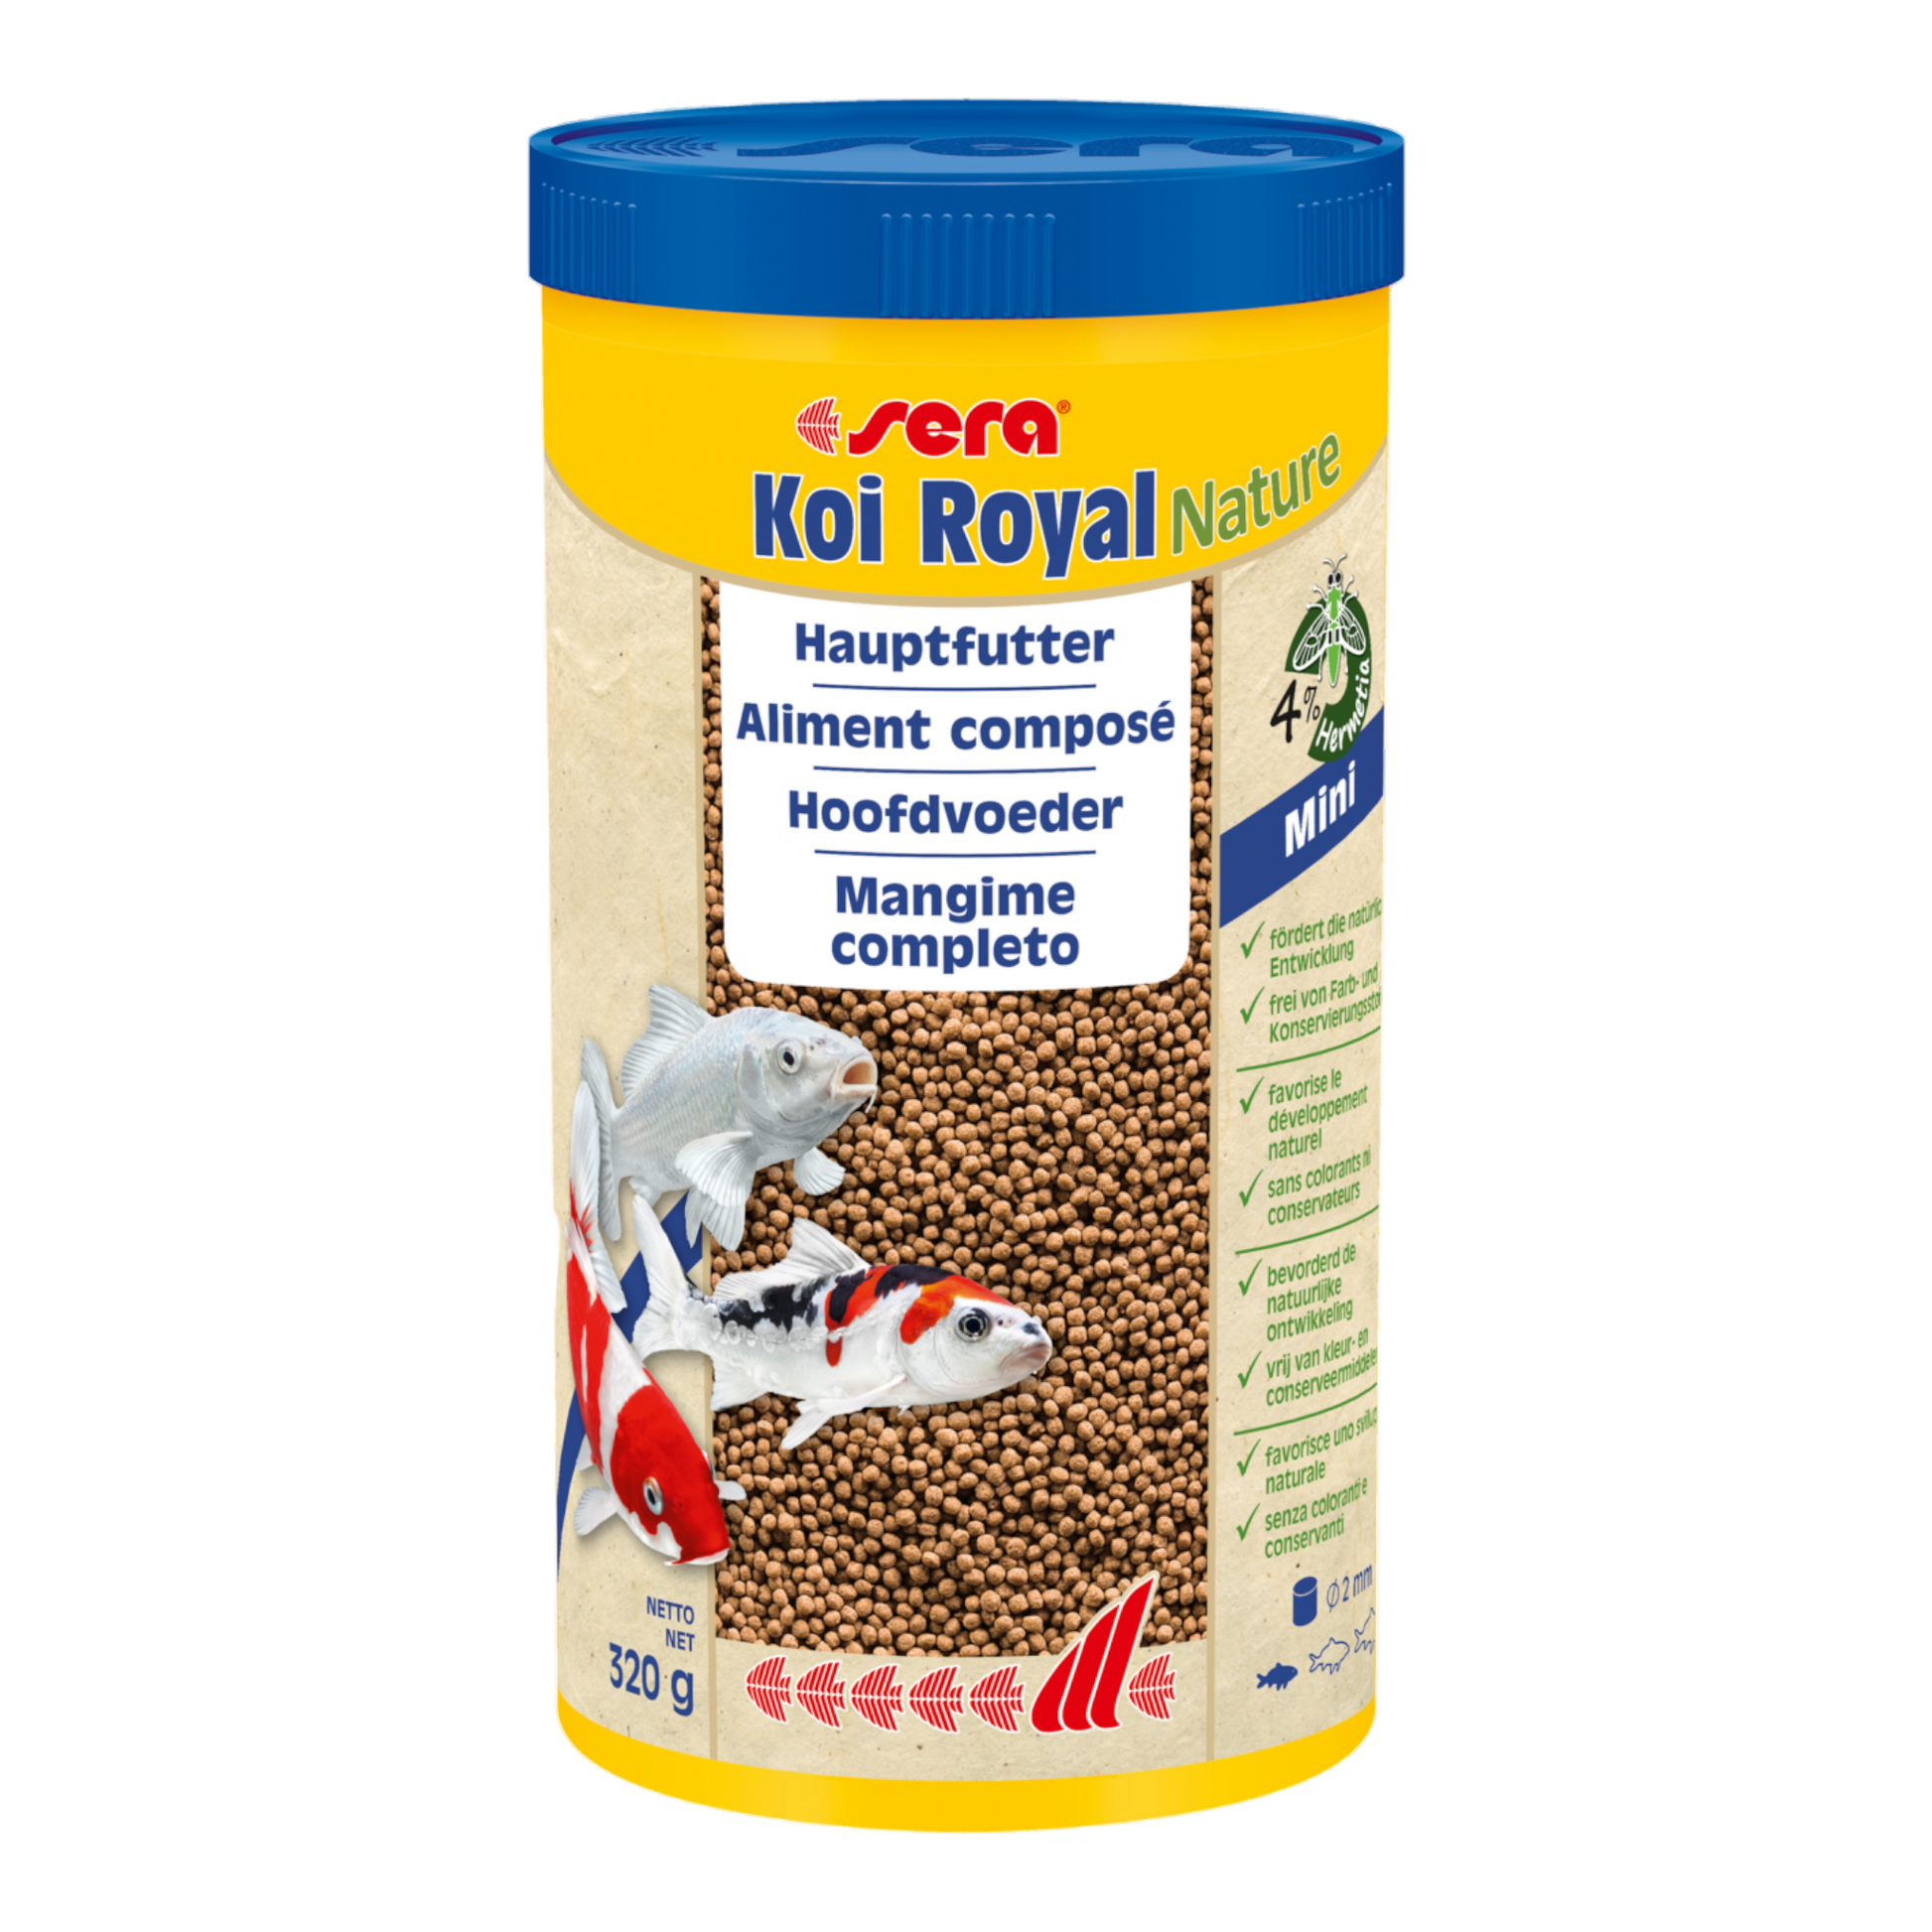 sera Koi Royal Nature Mini (2 mm) ist das Hauptfutter aus schonend hergestelltem Granulat ohne Farb- und Konservierungsstoffe.